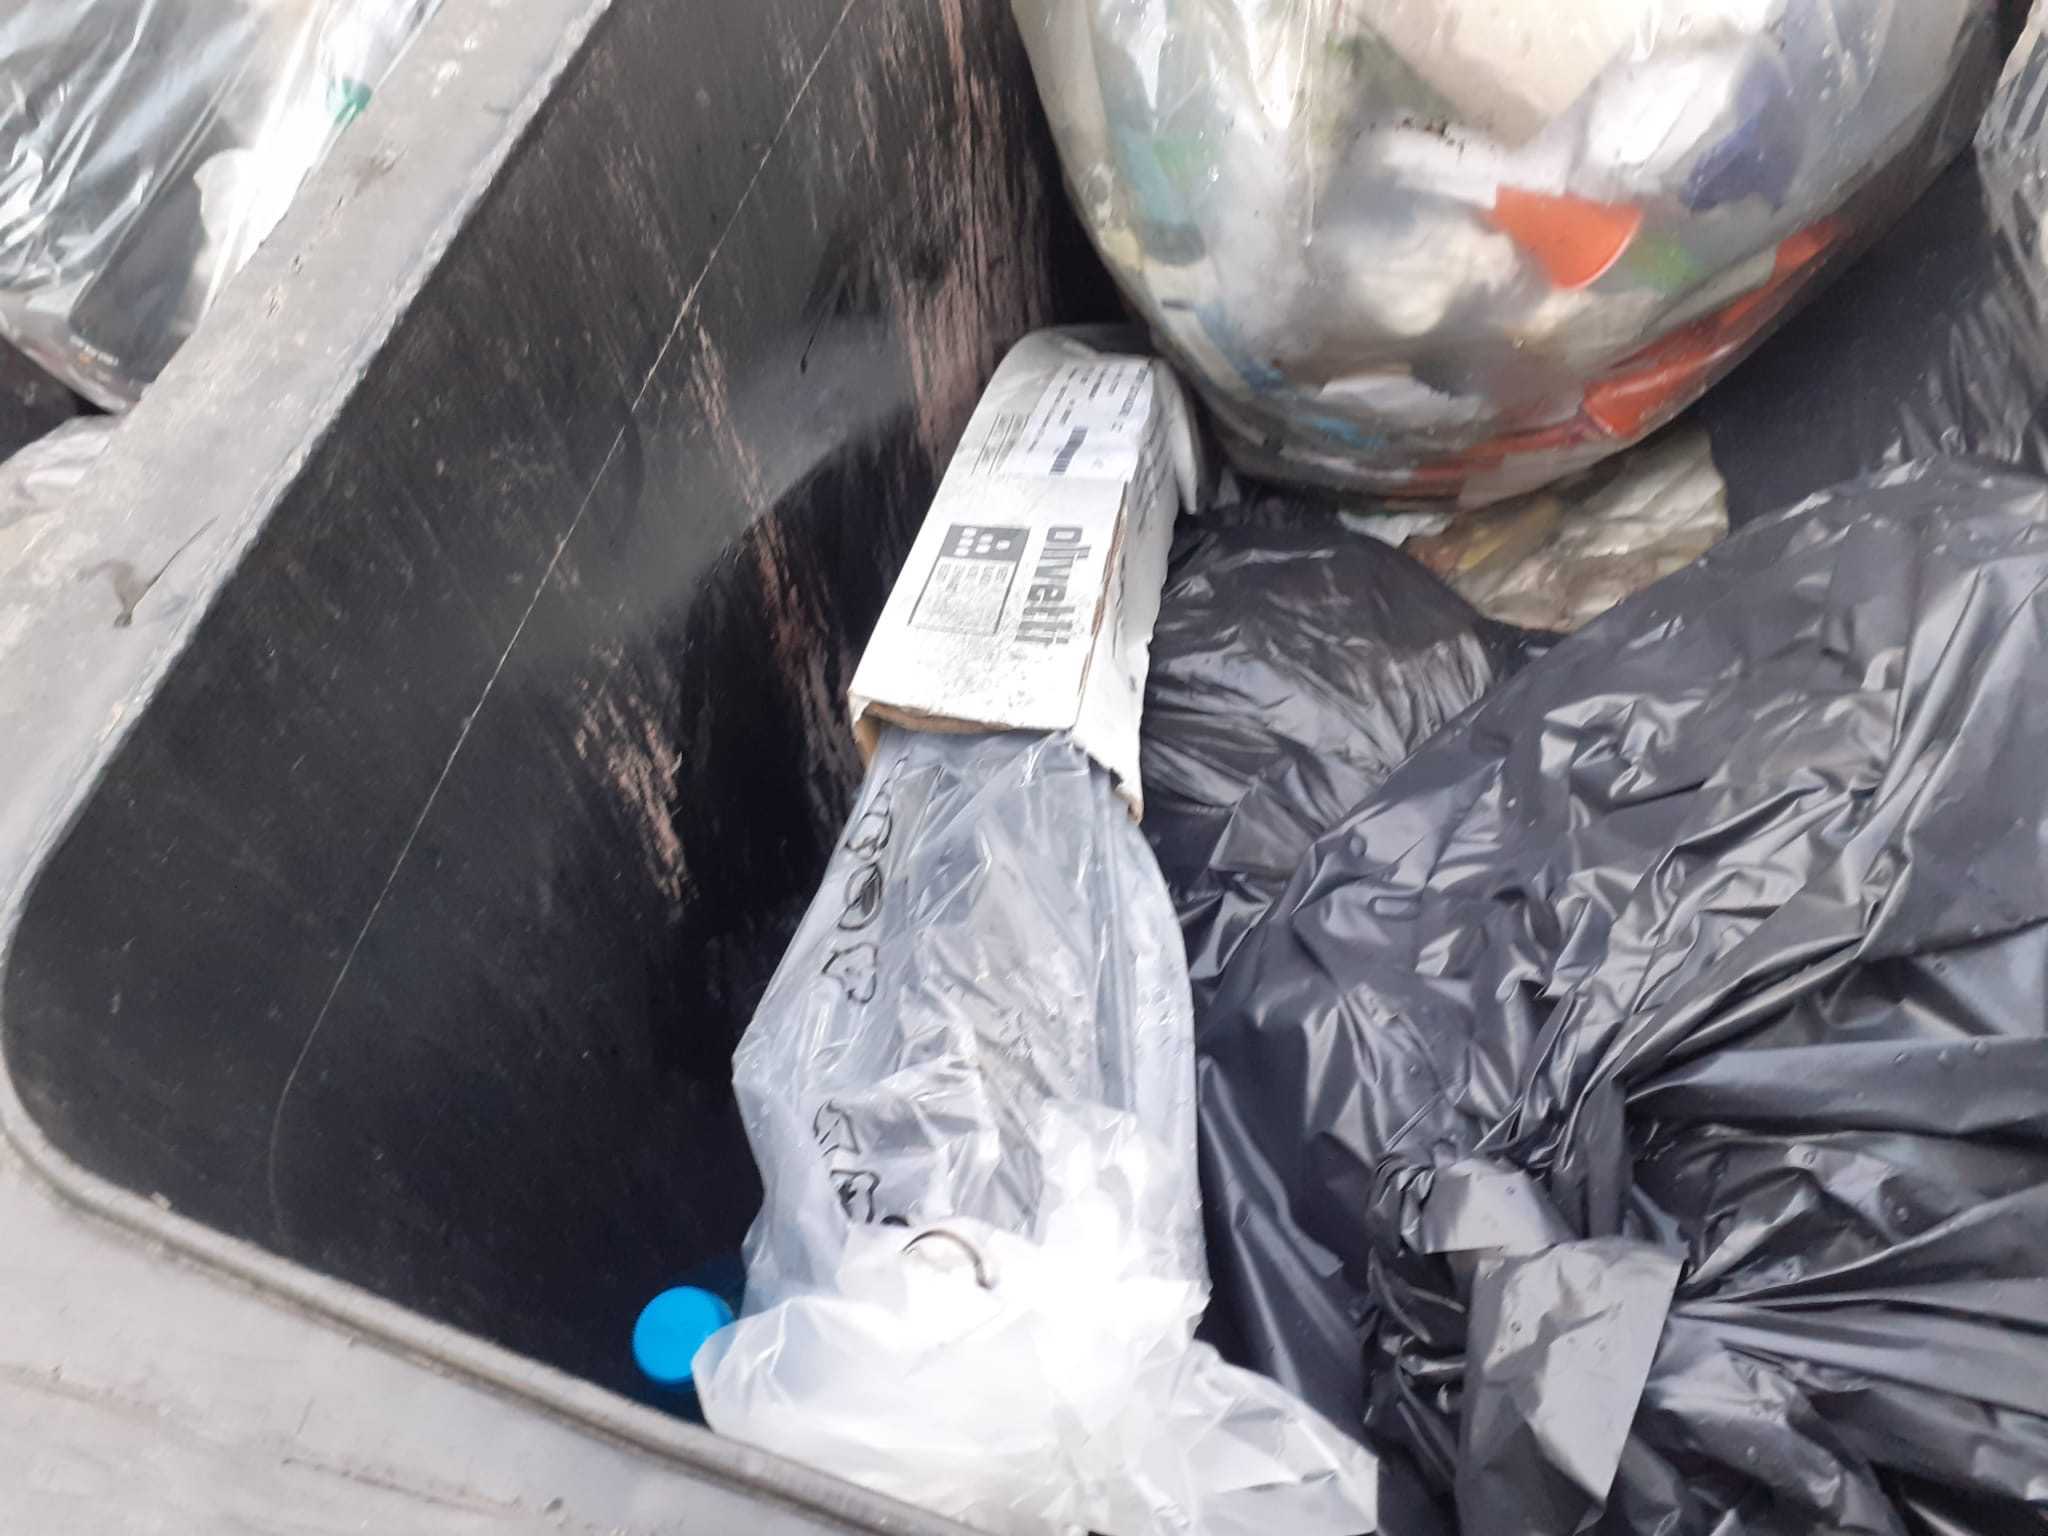 Dichiarazioni dell'ass. Cavallaro su rifiuti ammassati alla Cittadella (Foto)